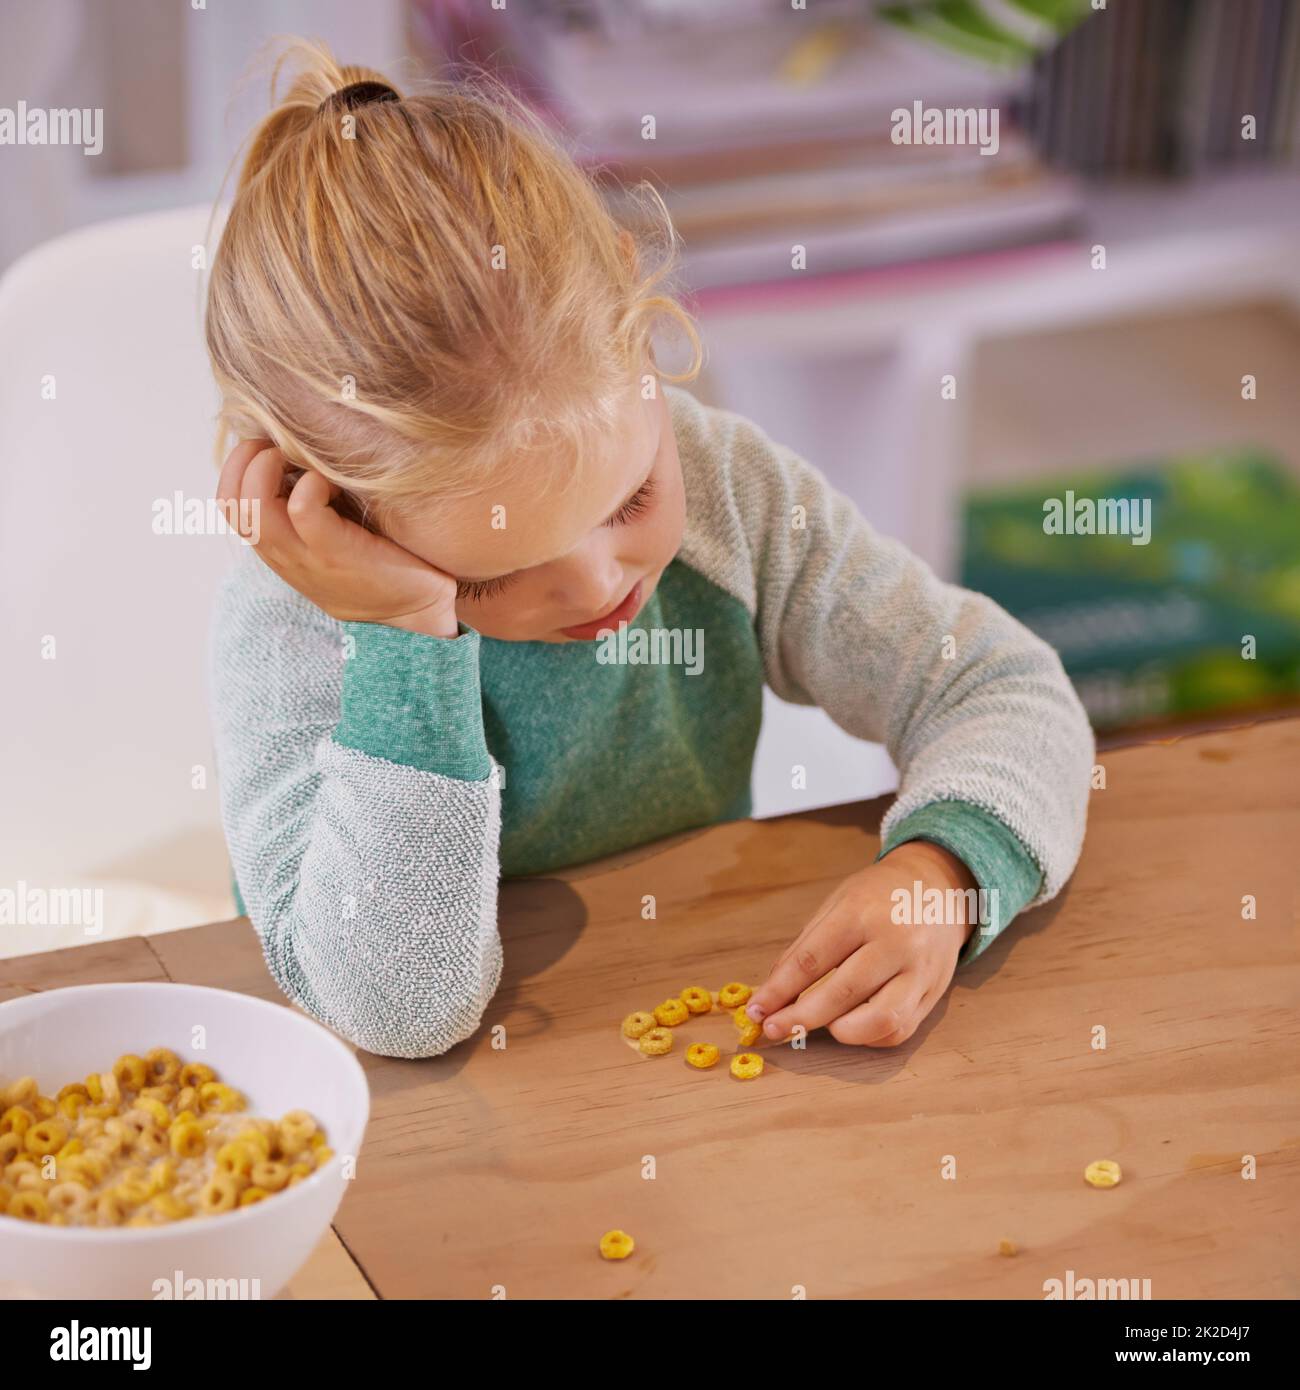 Ich mag diese Cerealien nicht. Aufnahme eines kleinen Mädchens, das traurig aussass, als es zu Hause frühstückte. Stockfoto